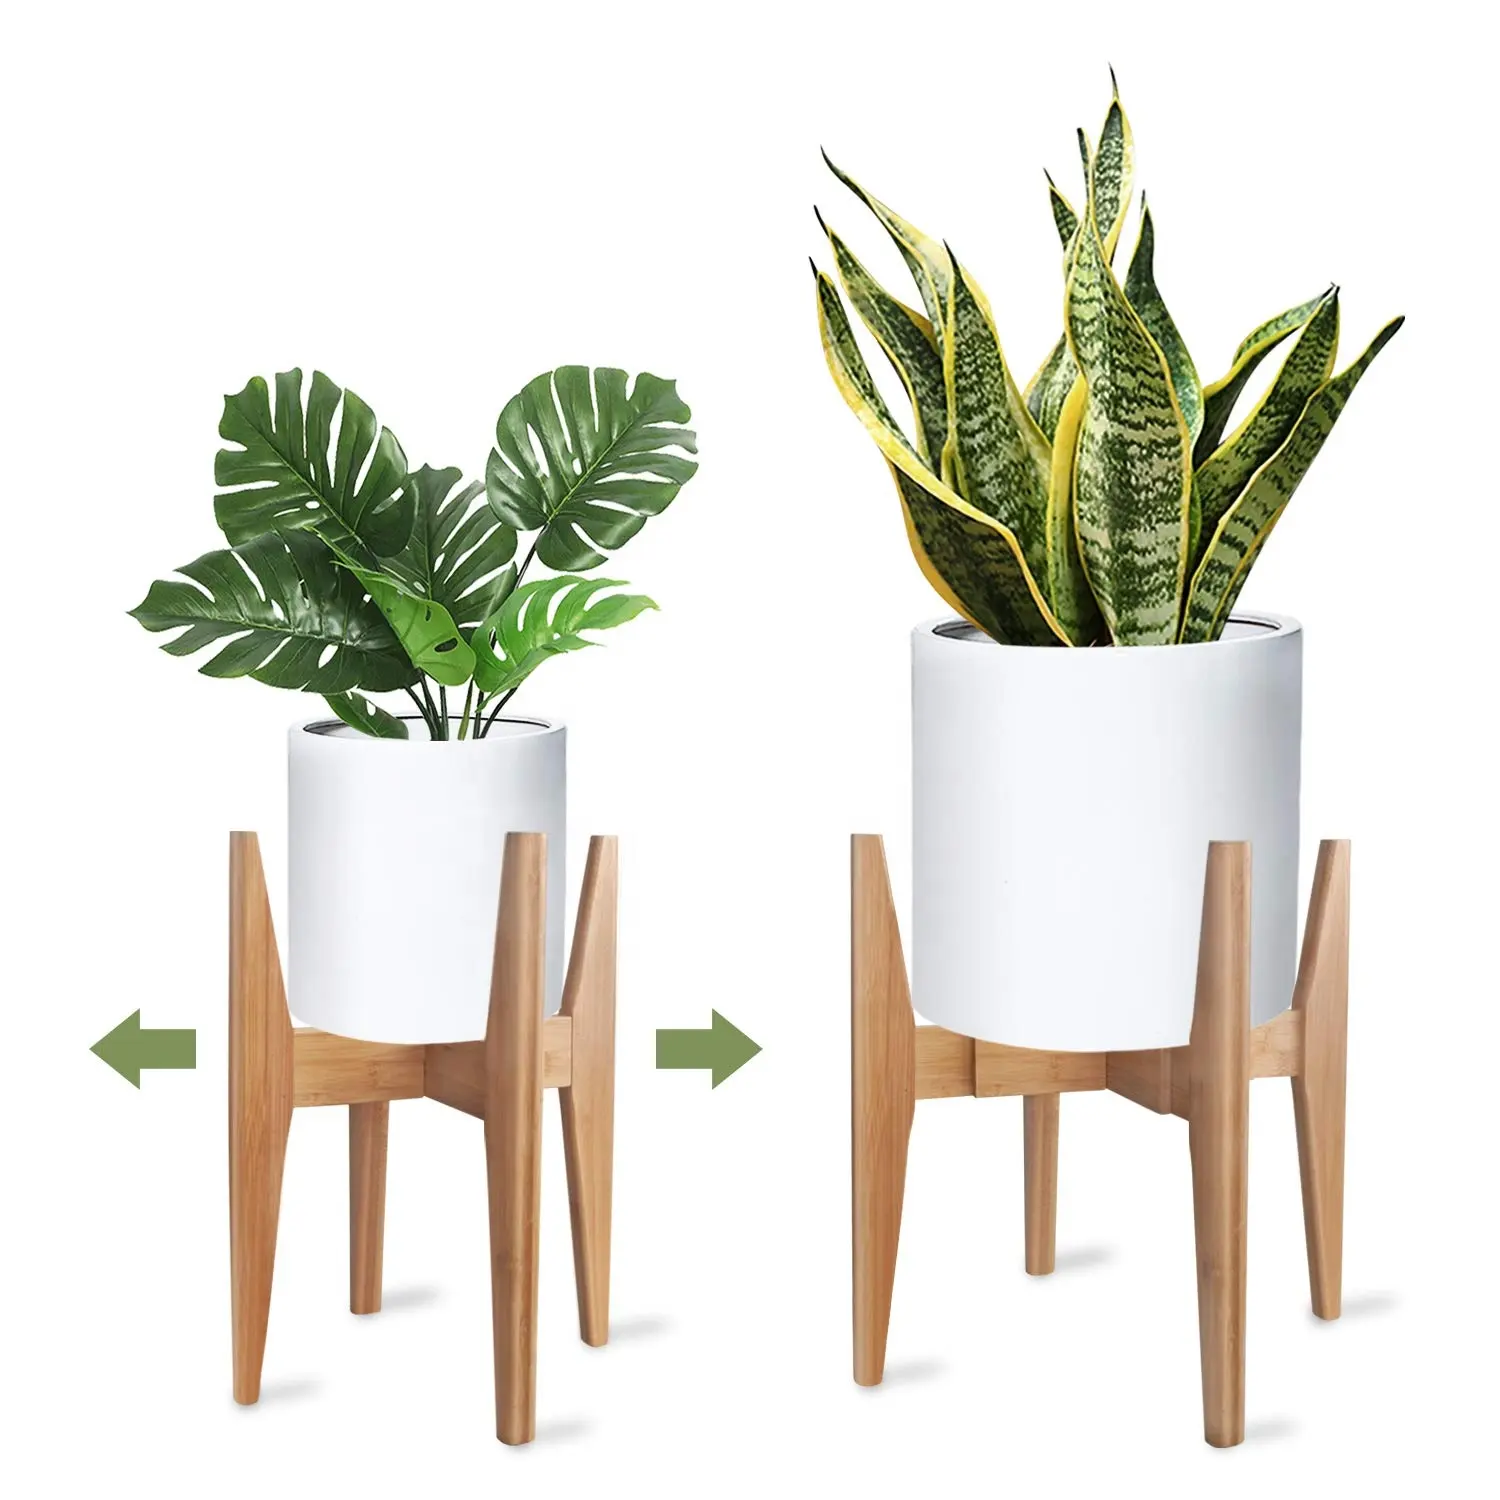 Unique home decor cross wooden plant stand flower pots holder